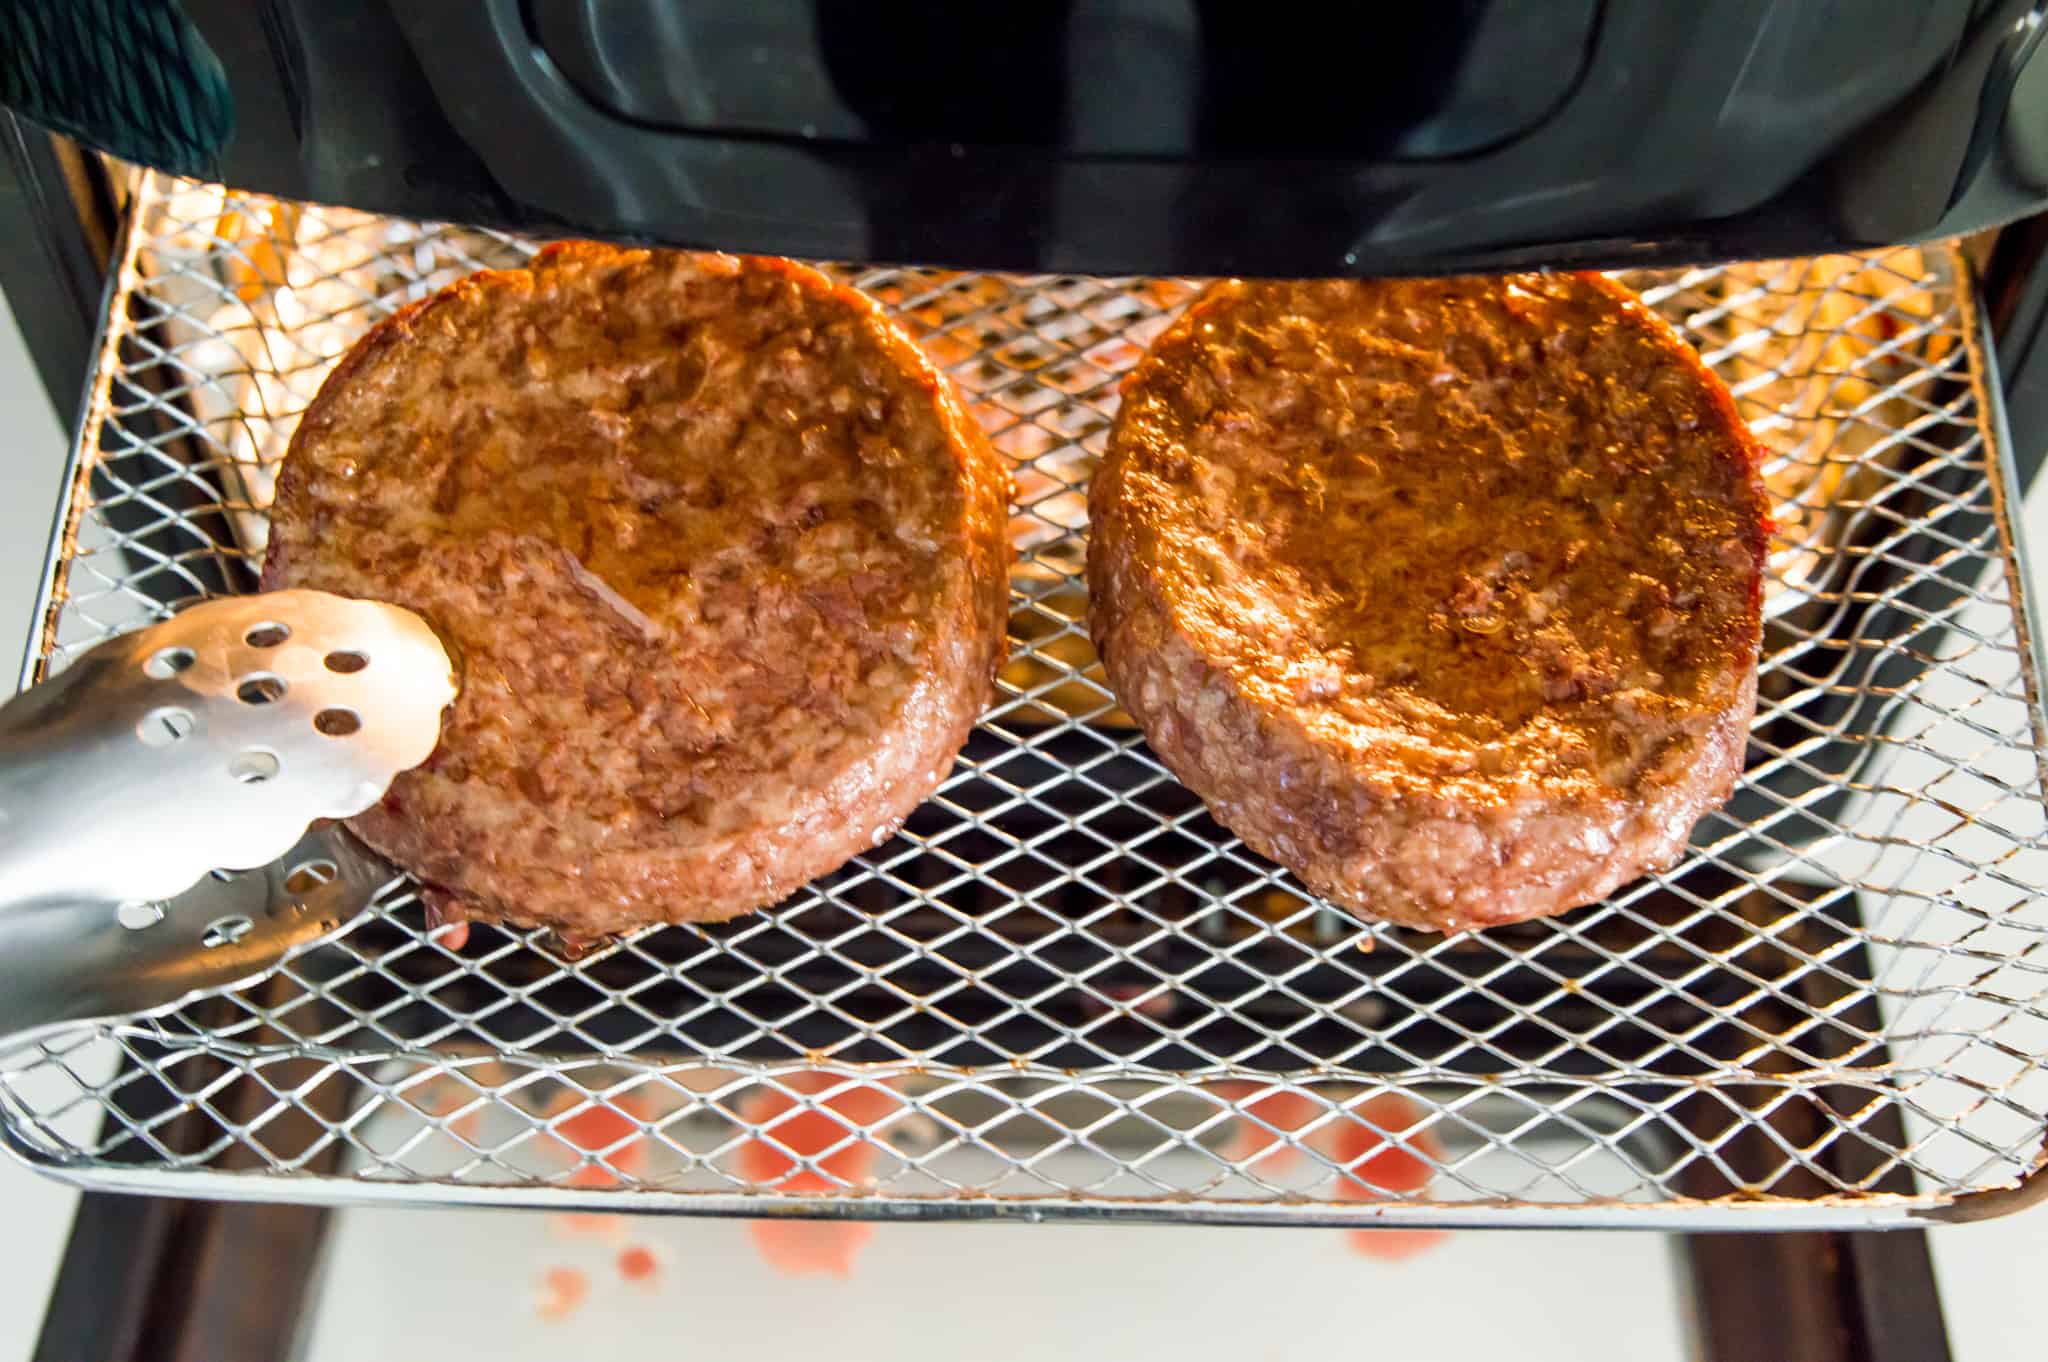 How To Cook Frozen Burger In Air Fryer